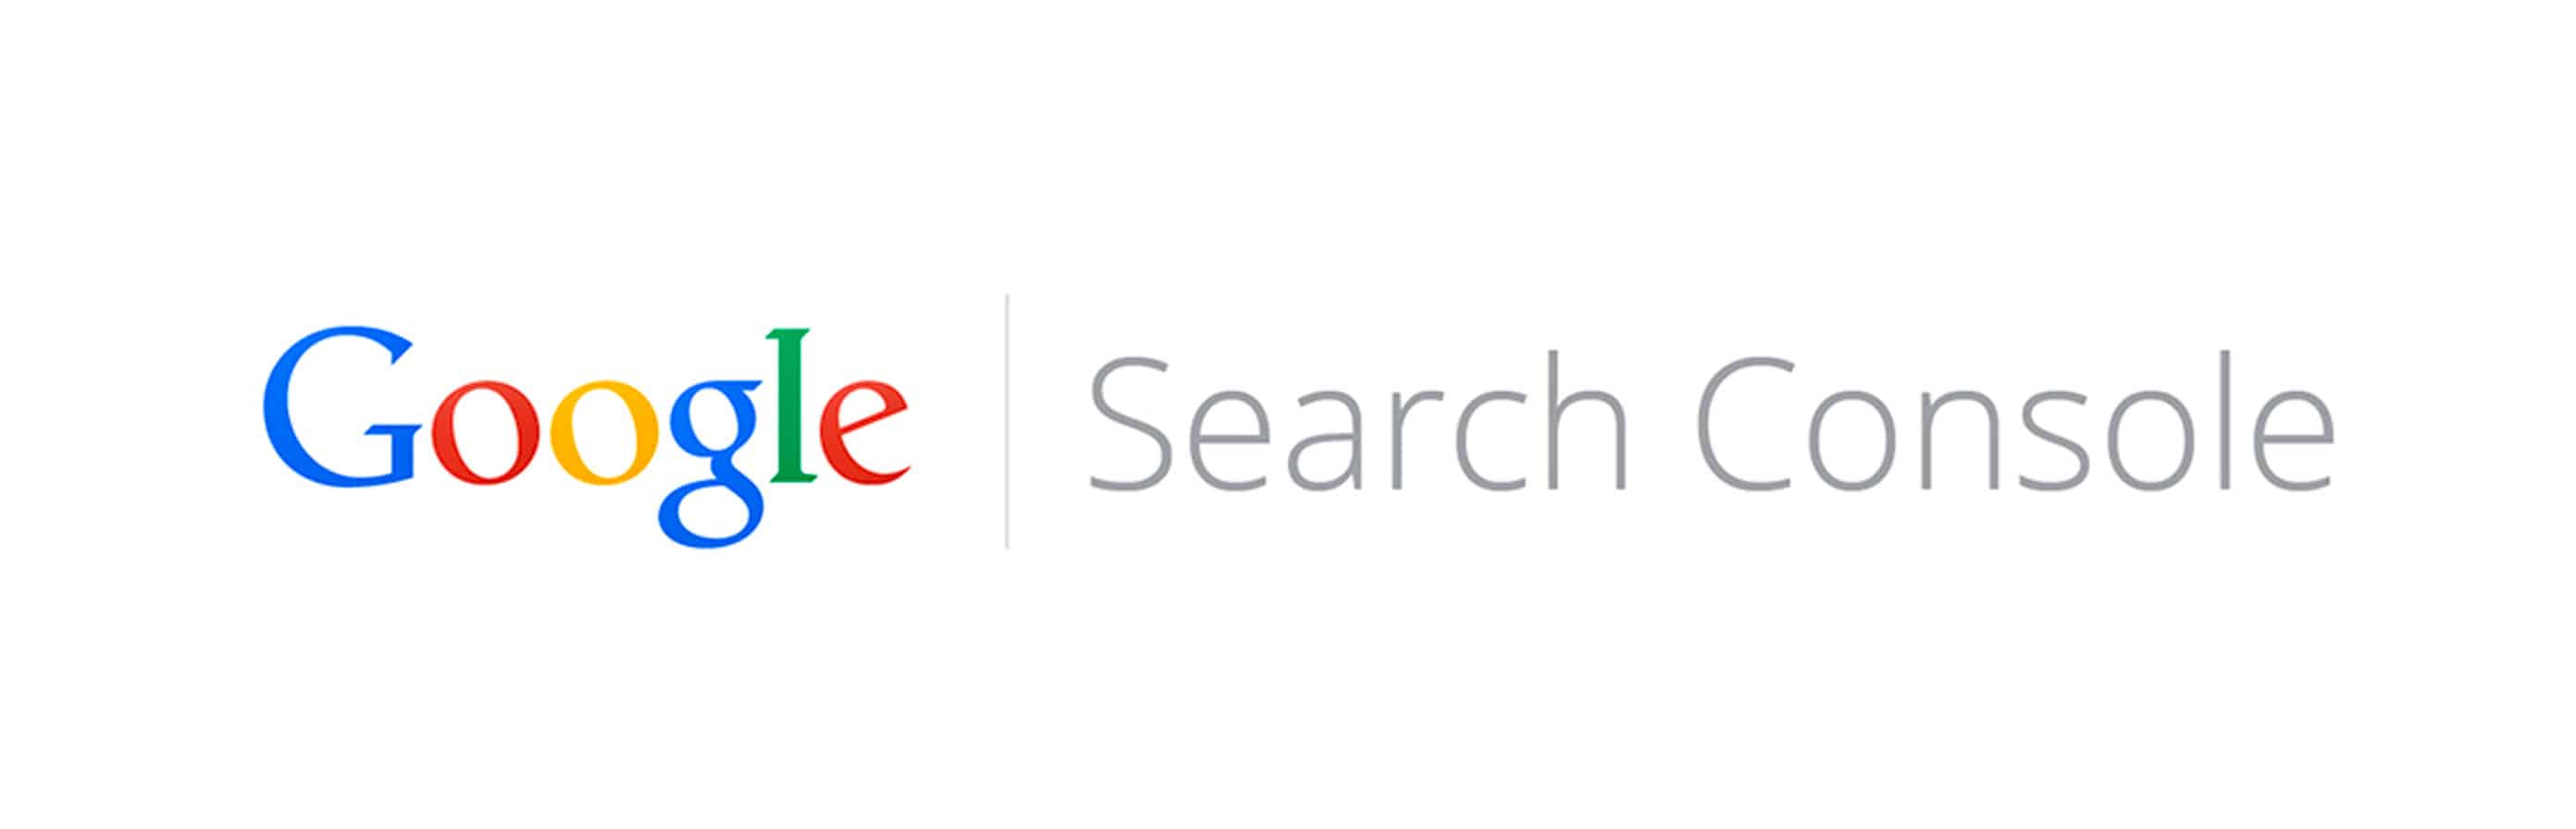 Google com search console. Гугл search Console. Google Rise Award. Гугл Серч консоль. Google search Console лого.